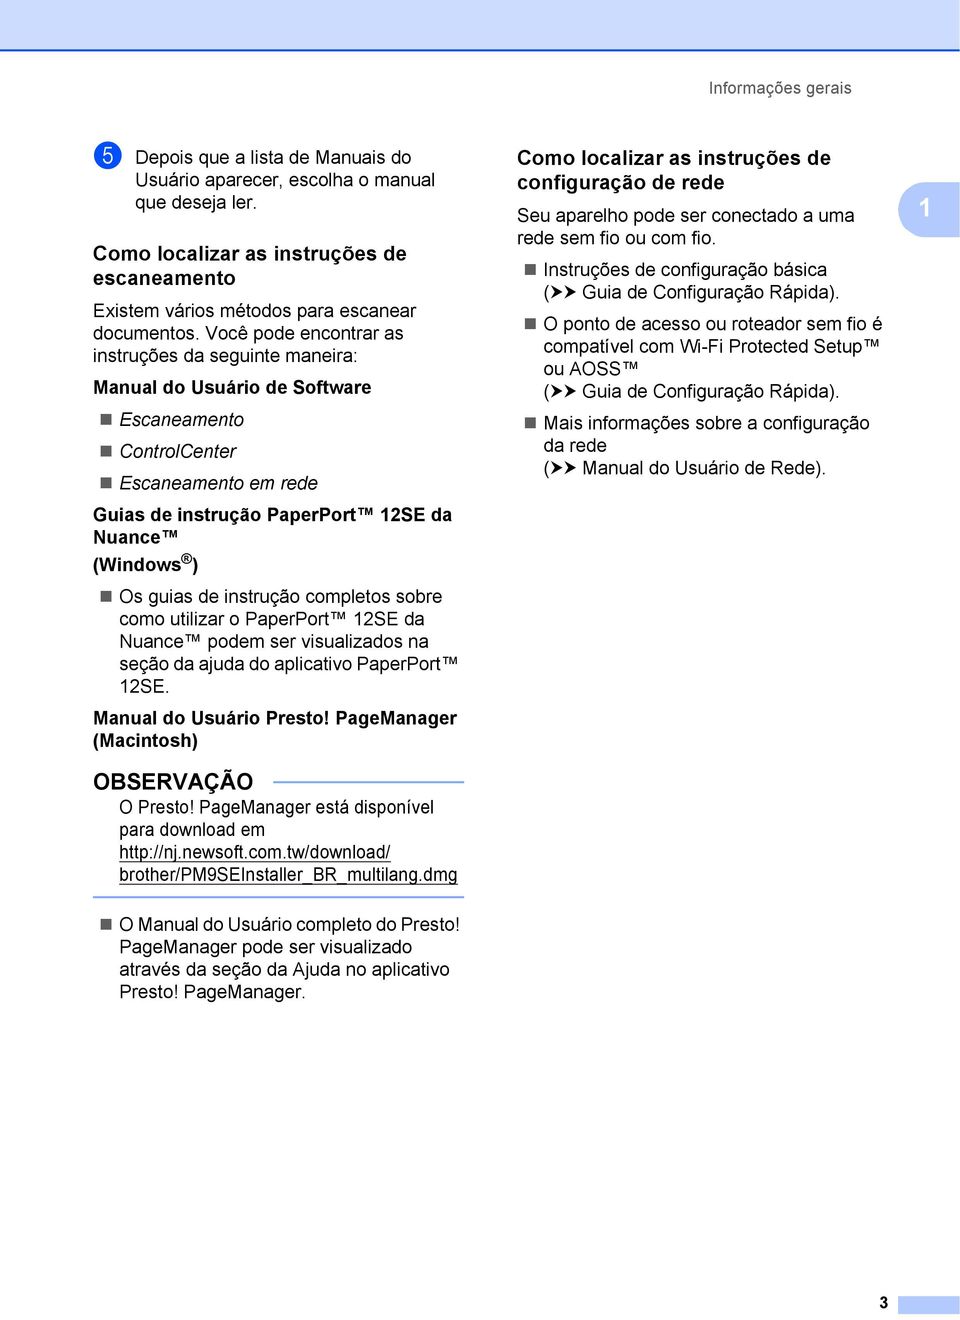 instrução completos sobre como utilizar o PaperPort 12SE da Nuance podem ser visualizados na seção da ajuda do aplicativo PaperPort 12SE. Manual do Usuário Presto!